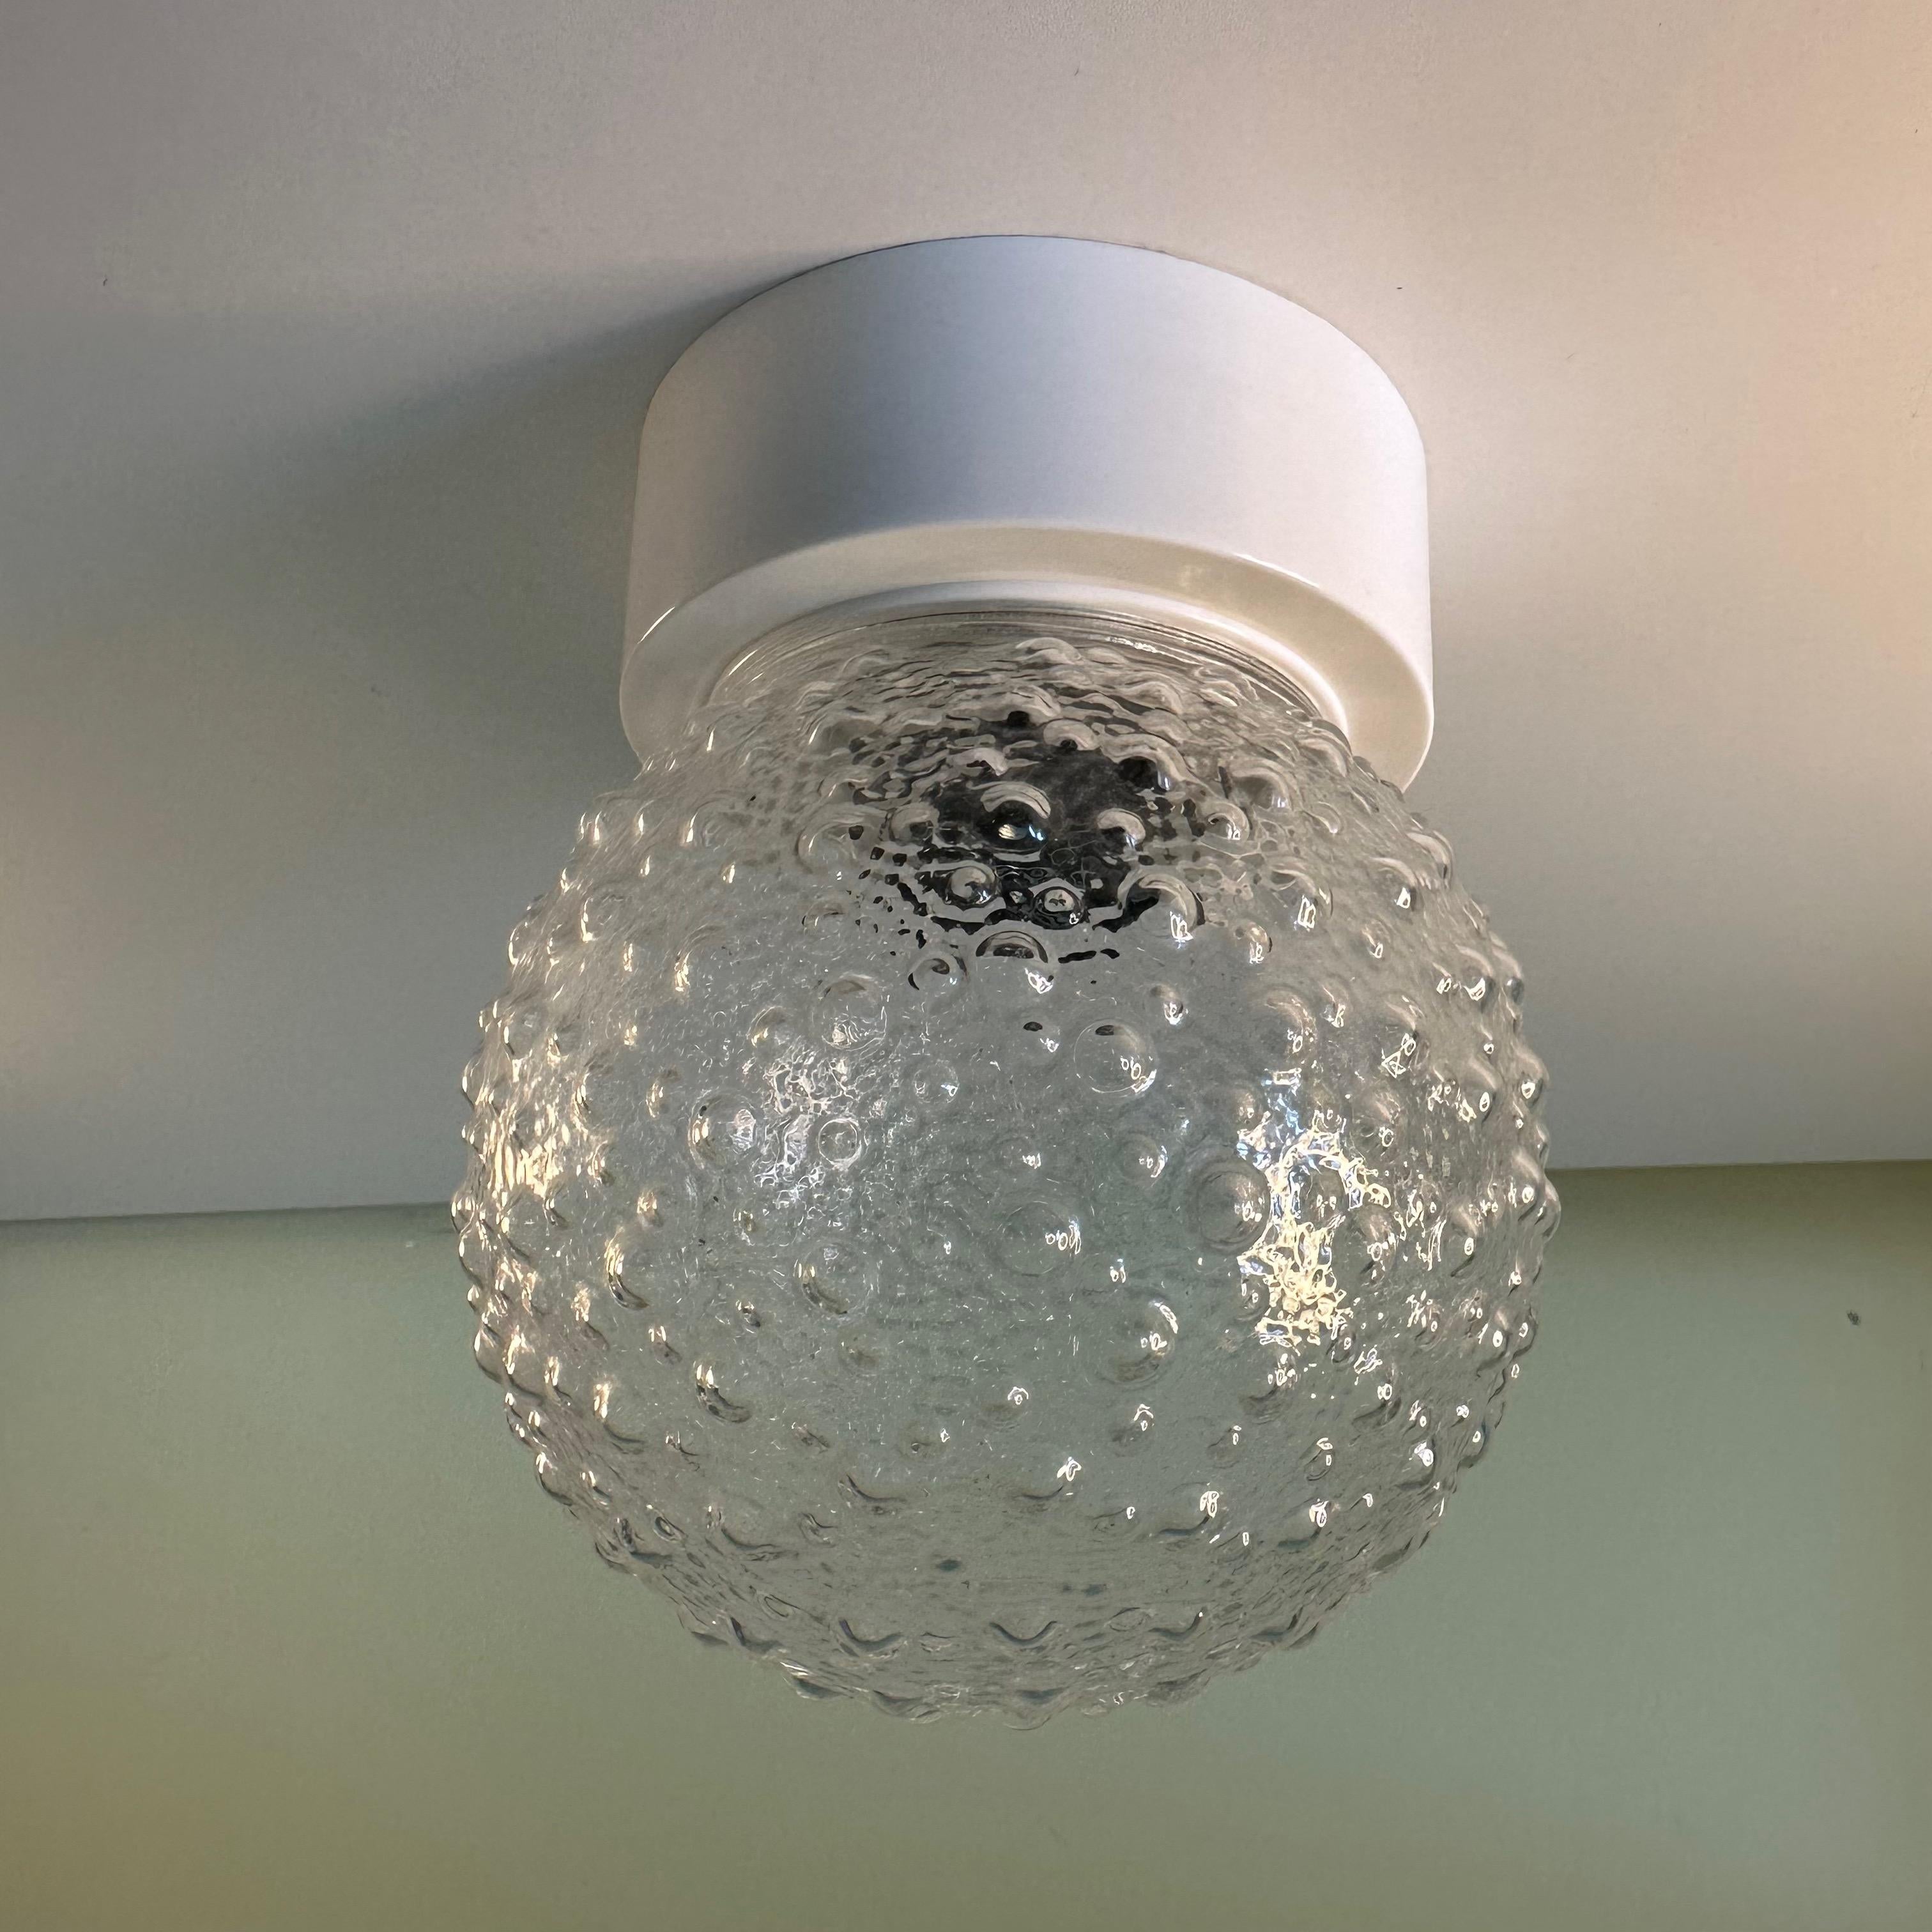 Kleine Vintage klar und weiß Kunststoff Blase strukturierten Globus flush mount Lampe oder Wandleuchte sconce. Diese kleine, charmante Leuchte mit Space-Age-Atmosphäre besteht aus einer klaren, kugelförmigen Kunststoffkugel, die mit einer